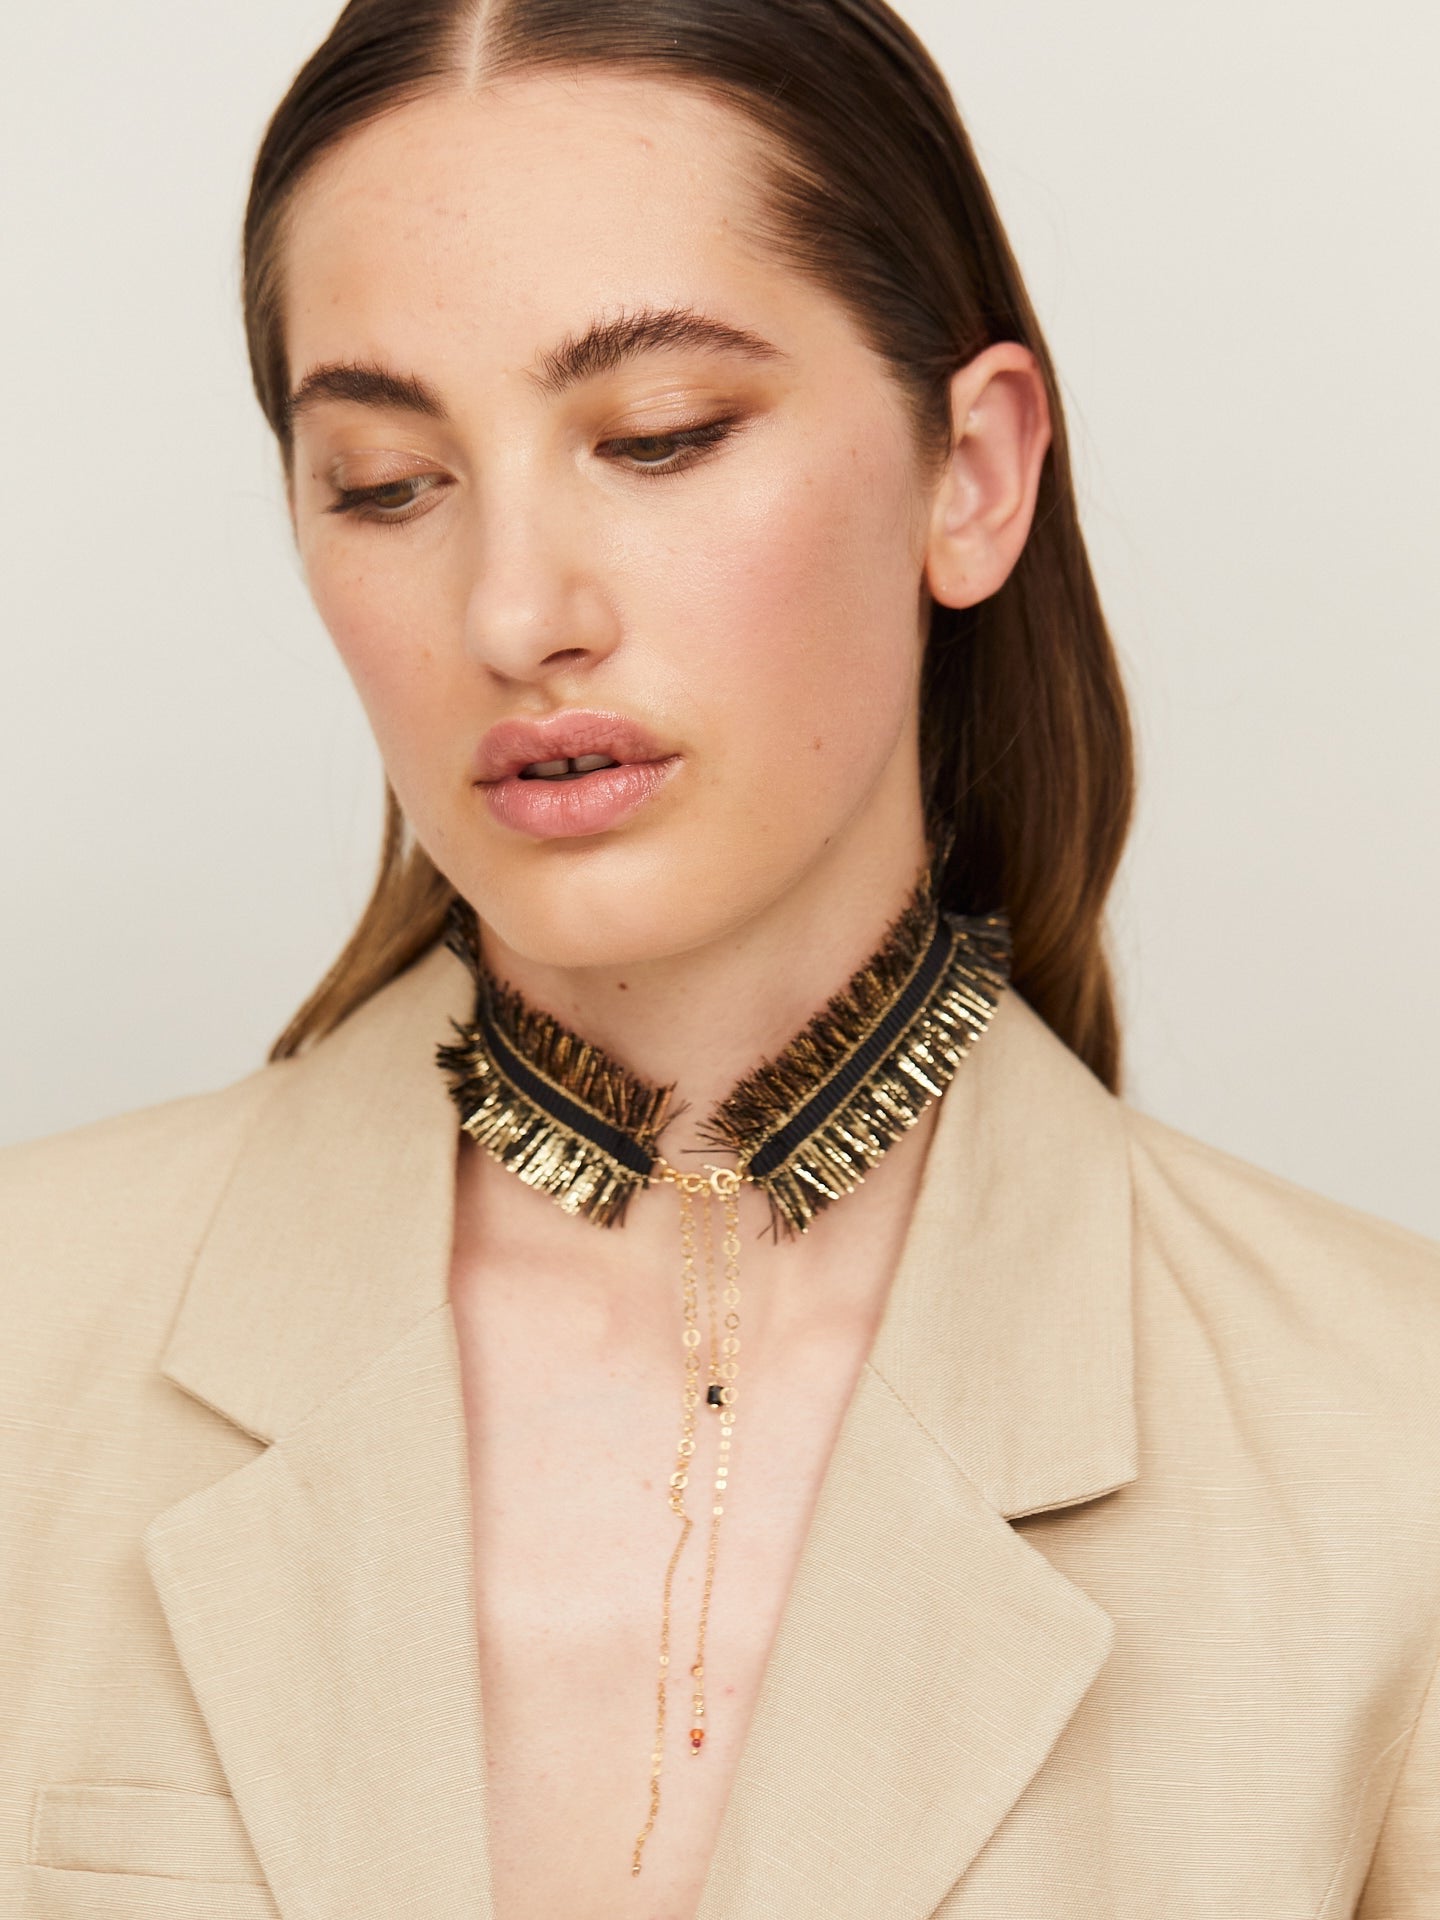 Exzentrische Halskette in Schwarz und Gold, getragen von einer jungen, attraktiven Frau, die zusätzlich einen hellen Blazer trägt.